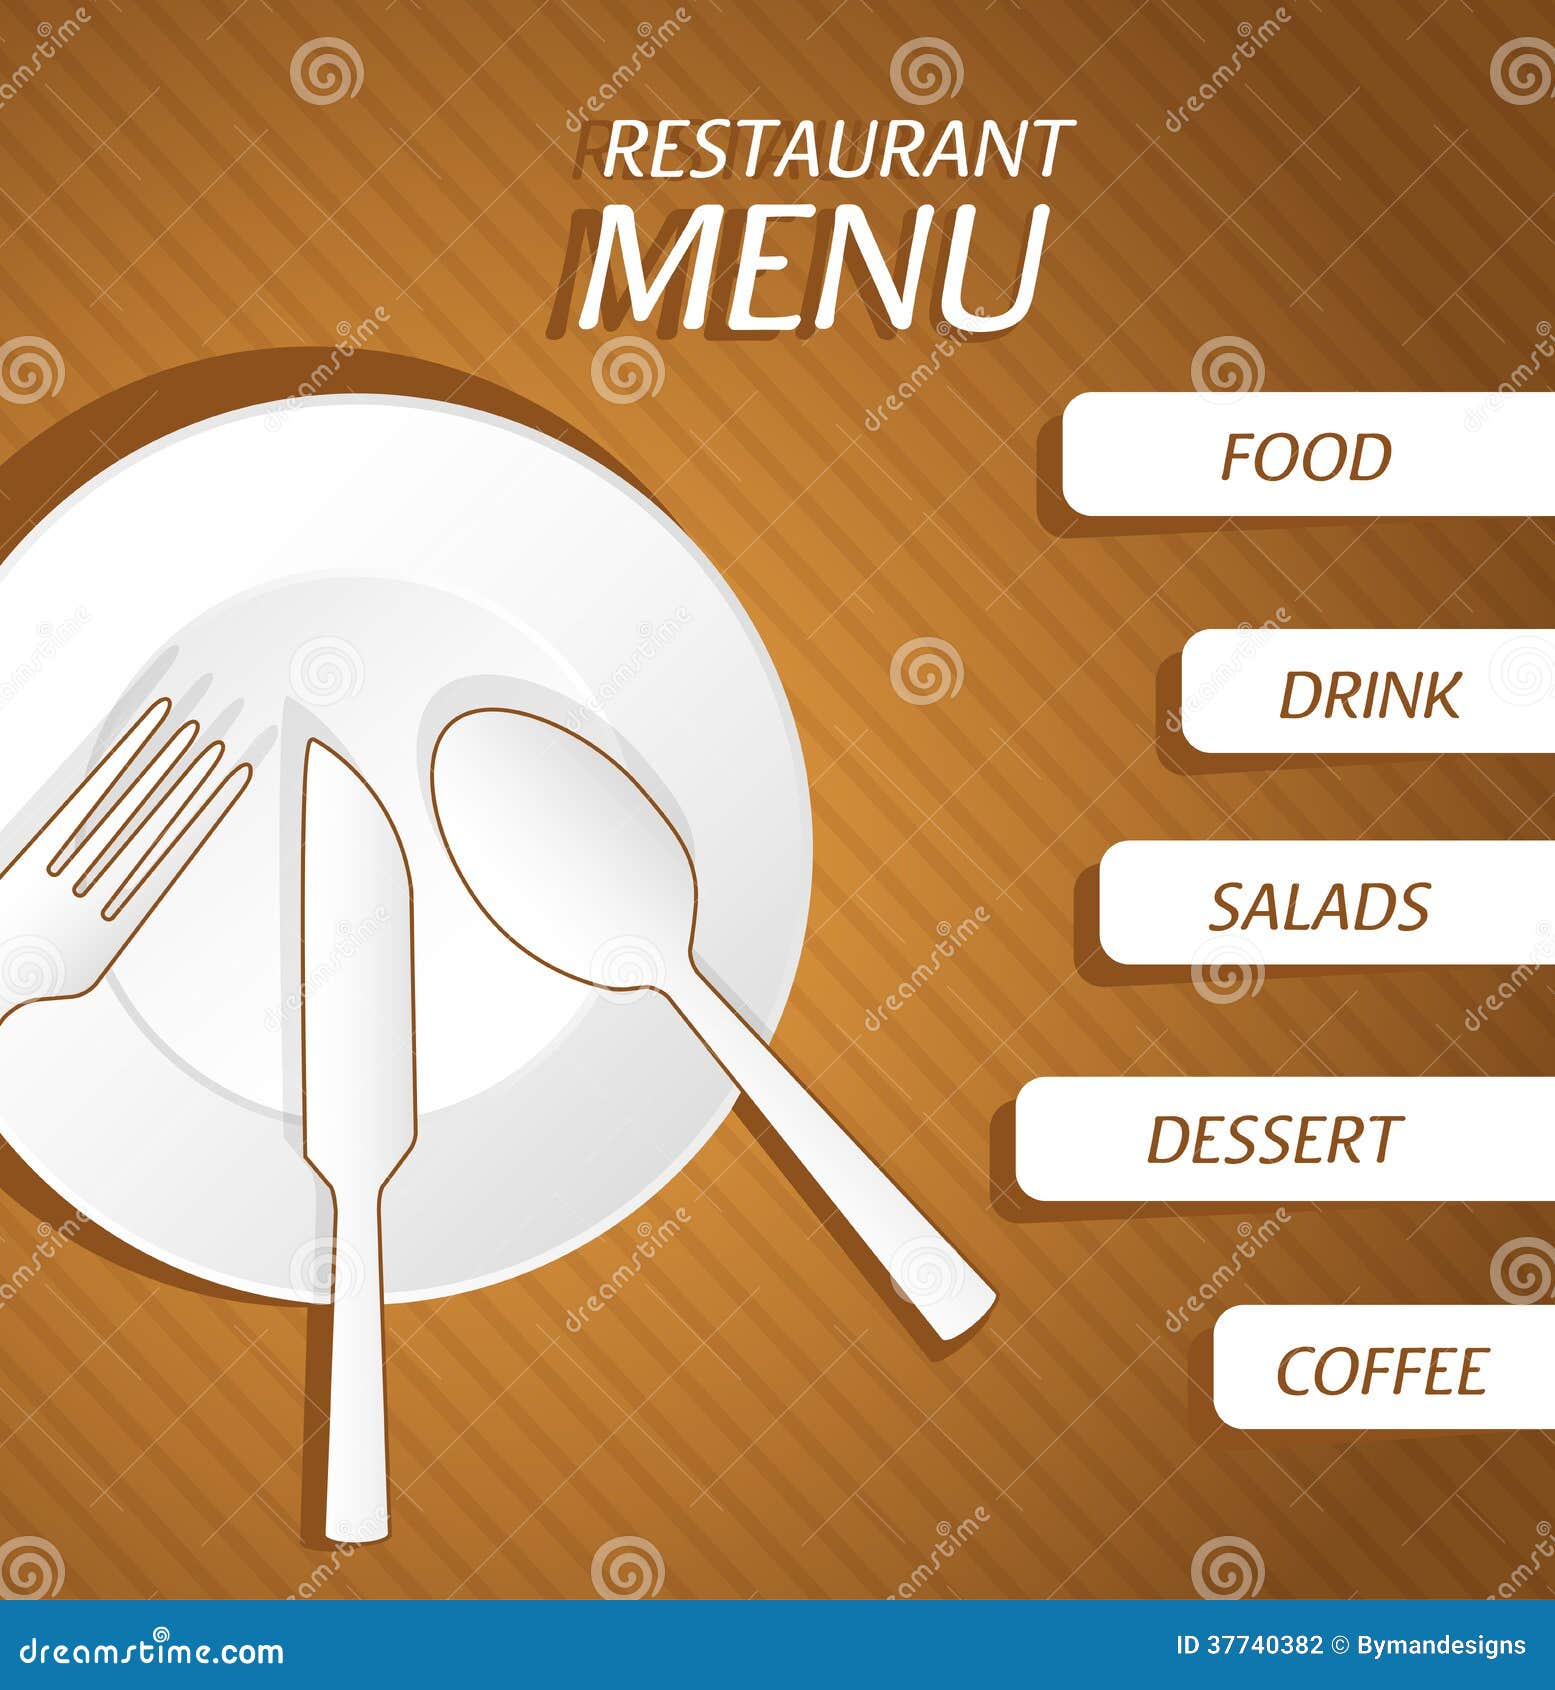 Tìm kiếm một nhà hàng hoàn hảo để tận hưởng đồ ăn ngon? Bạn đã đến đúng chỗ rồi! Hãy xem qua các menu của các nhà hàng qua hình ảnh liên quan. Hình ảnh chi tiết và màu sắc đẹp mắt sẽ làm bạn muốn đặt bàn ngay lập tức. 